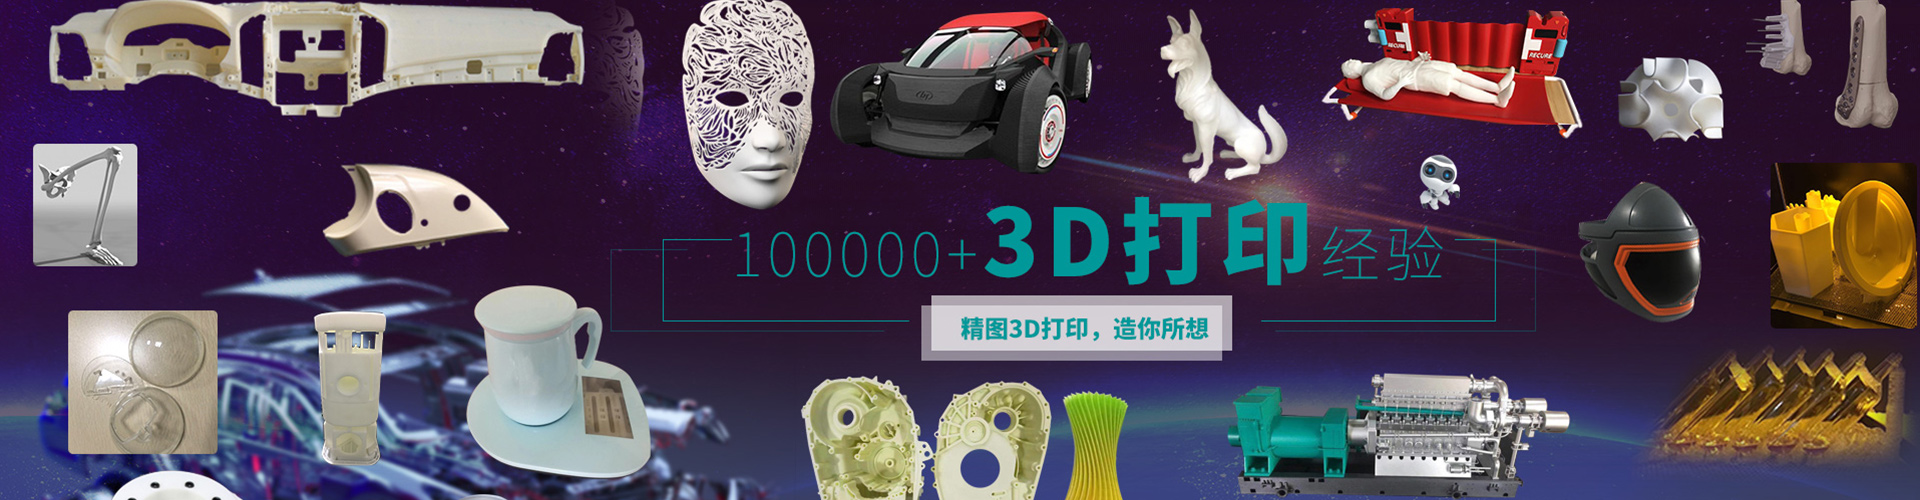 3D打印模型公司